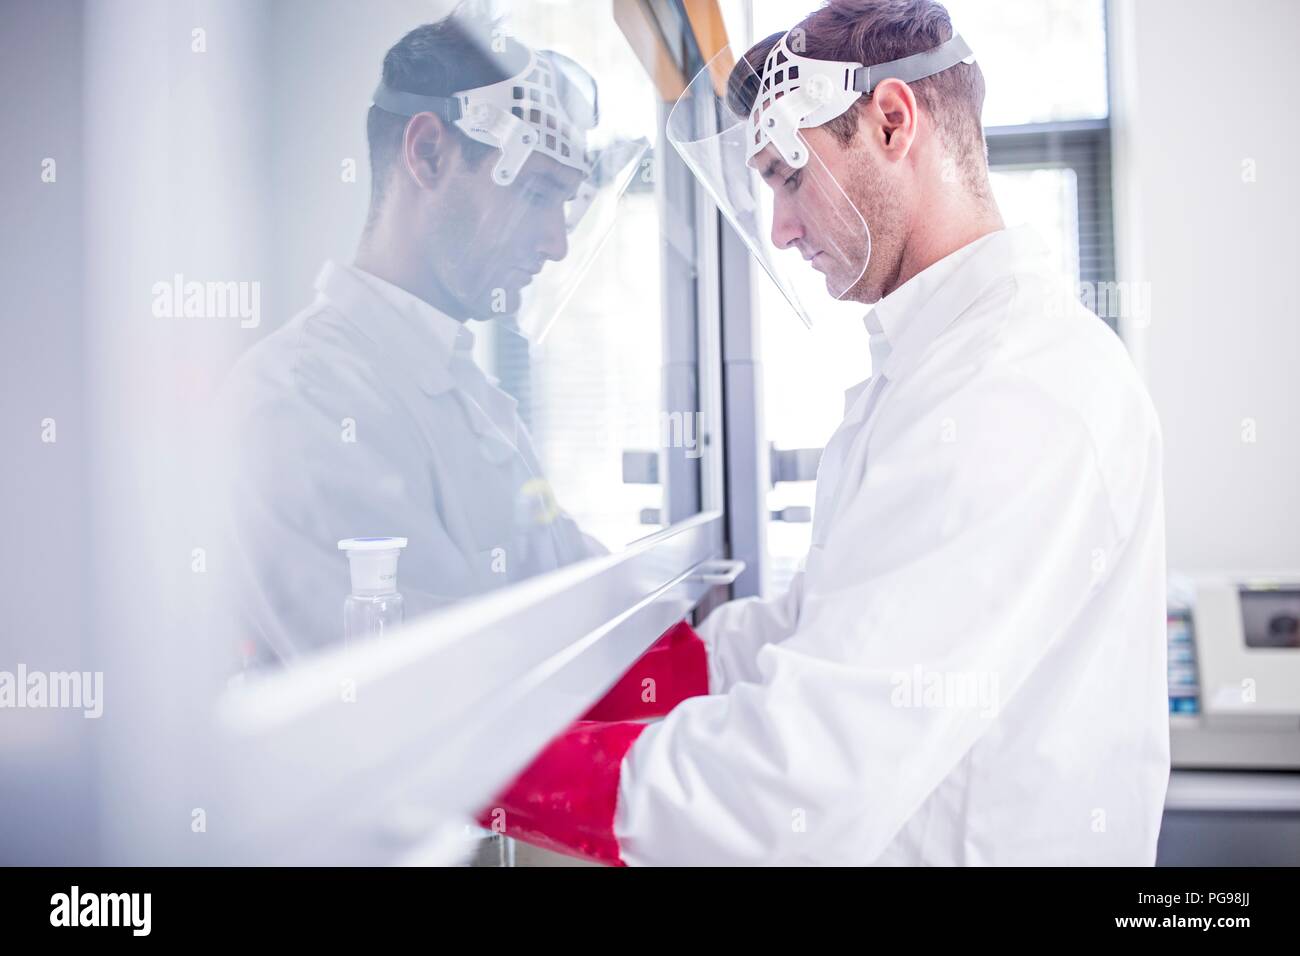 Labortechniker mit einem Laminardurchflußmesser mit Haube, dicke Handschuhe und ein Gesichtsschutz bei der Arbeit mit gefährlichen Chemikalien. Stockfoto